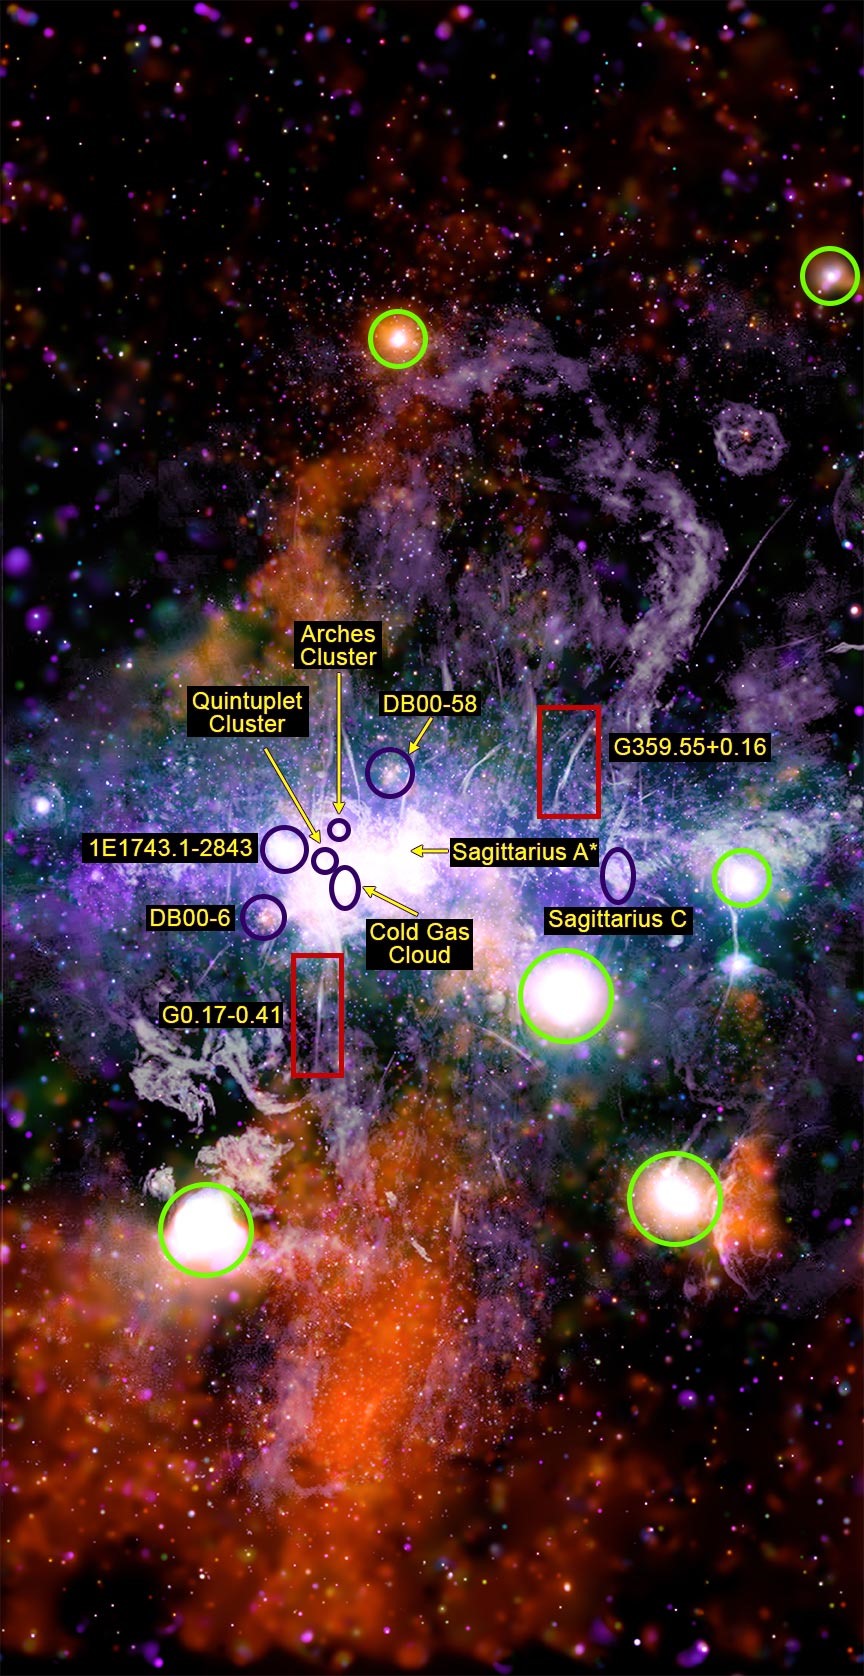 Phiên bản hình ảnh này nêu bật một số đặc điểm chính của cuộc khảo sát Trung tâm Thiên hà mới thực hiện. Ảnh: NASA.